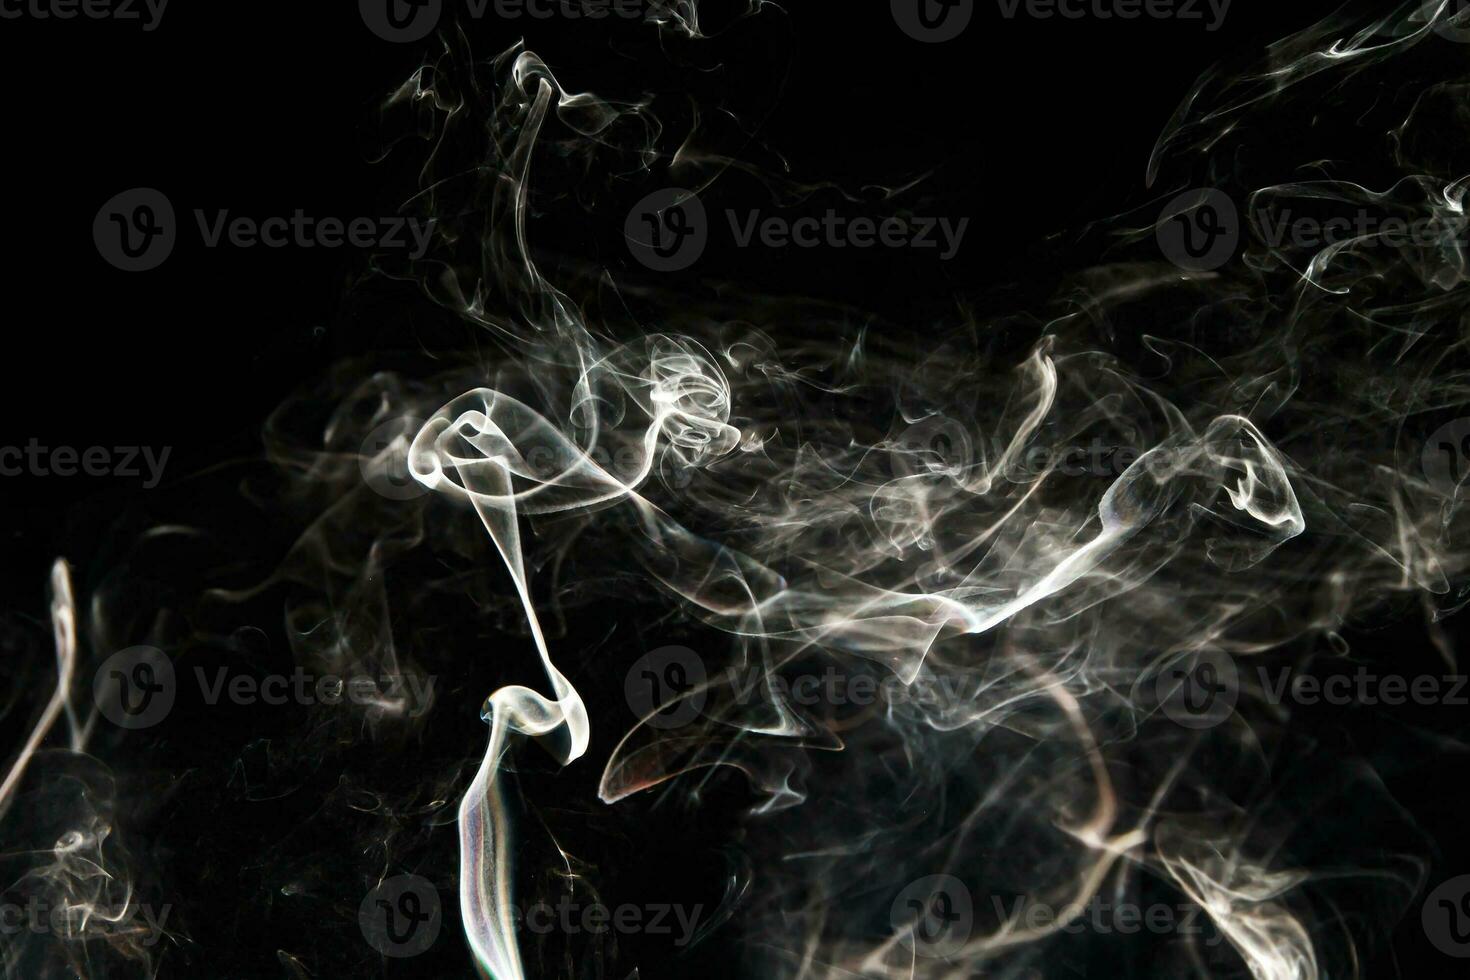 trama effetto fumo. sfondo isolato. sfondo nero e scuro. fuoco fumoso ed effetto nebbioso. foto